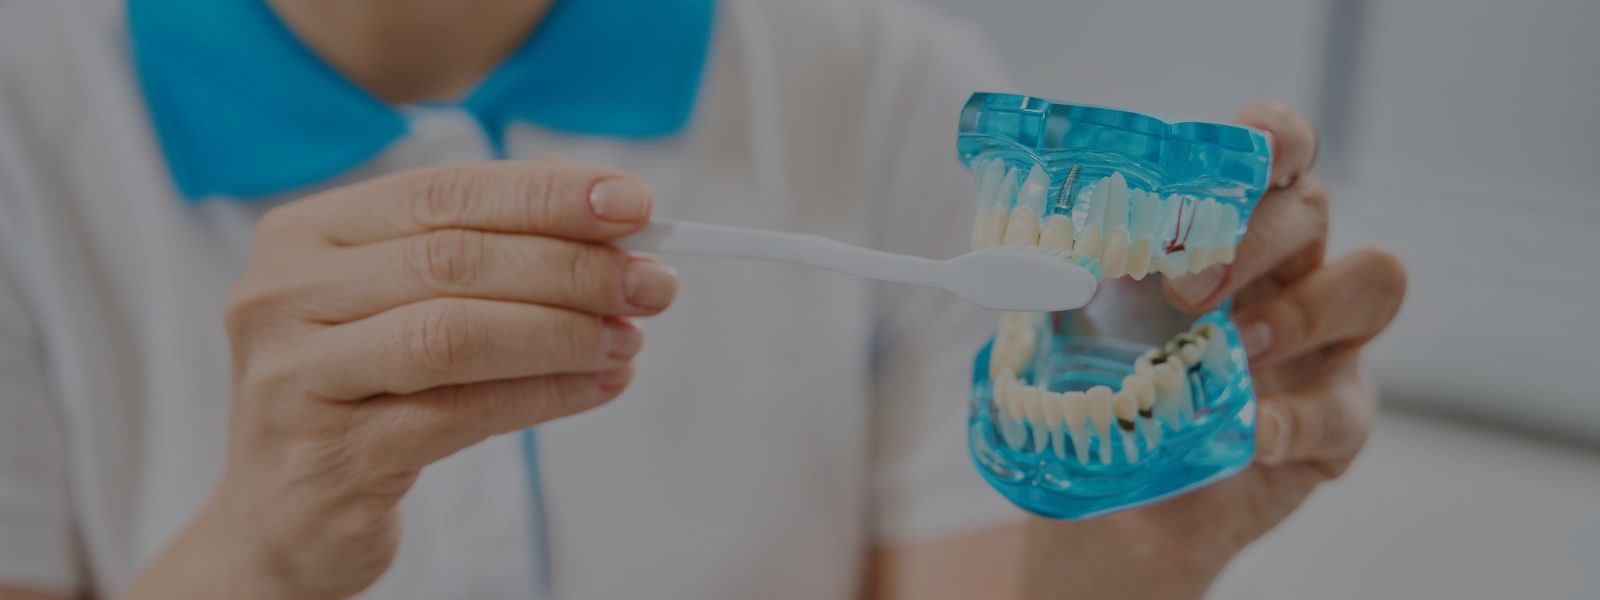 ¿Quién es candidato para implantes dentales?